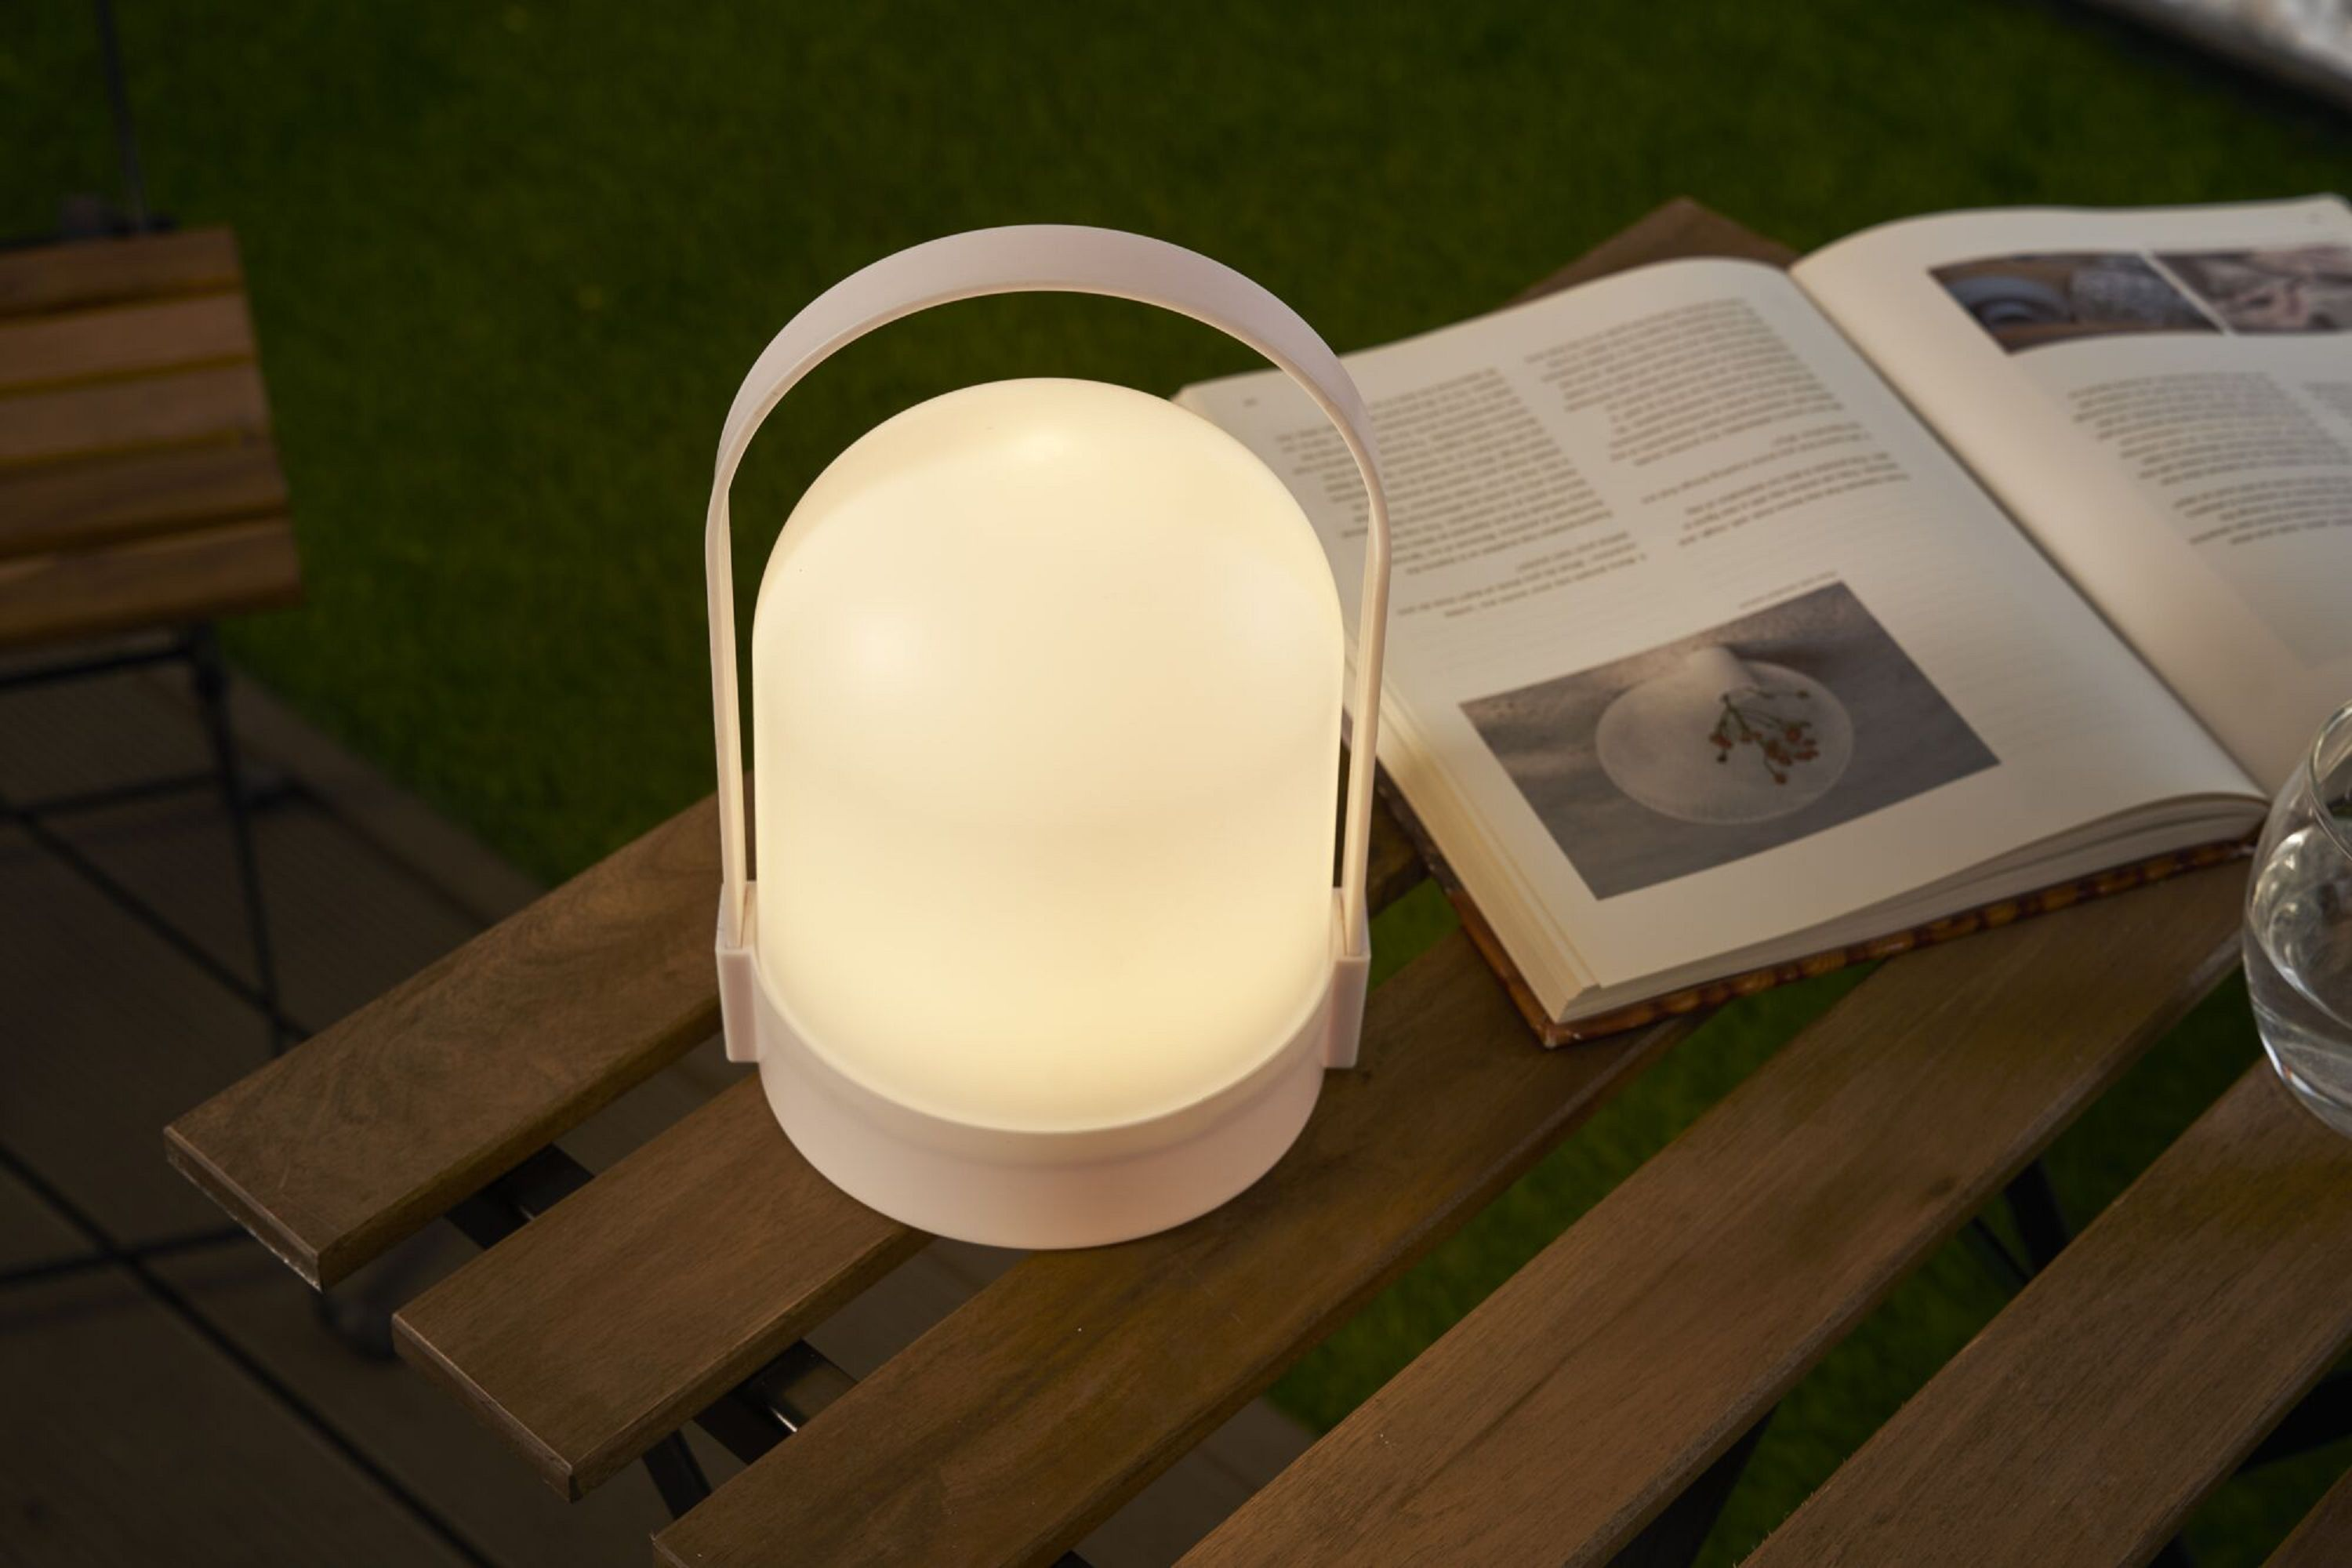 PAULMANN LICHT Outdoor Shine Tischleuchte Warmweiß Mobile lantern